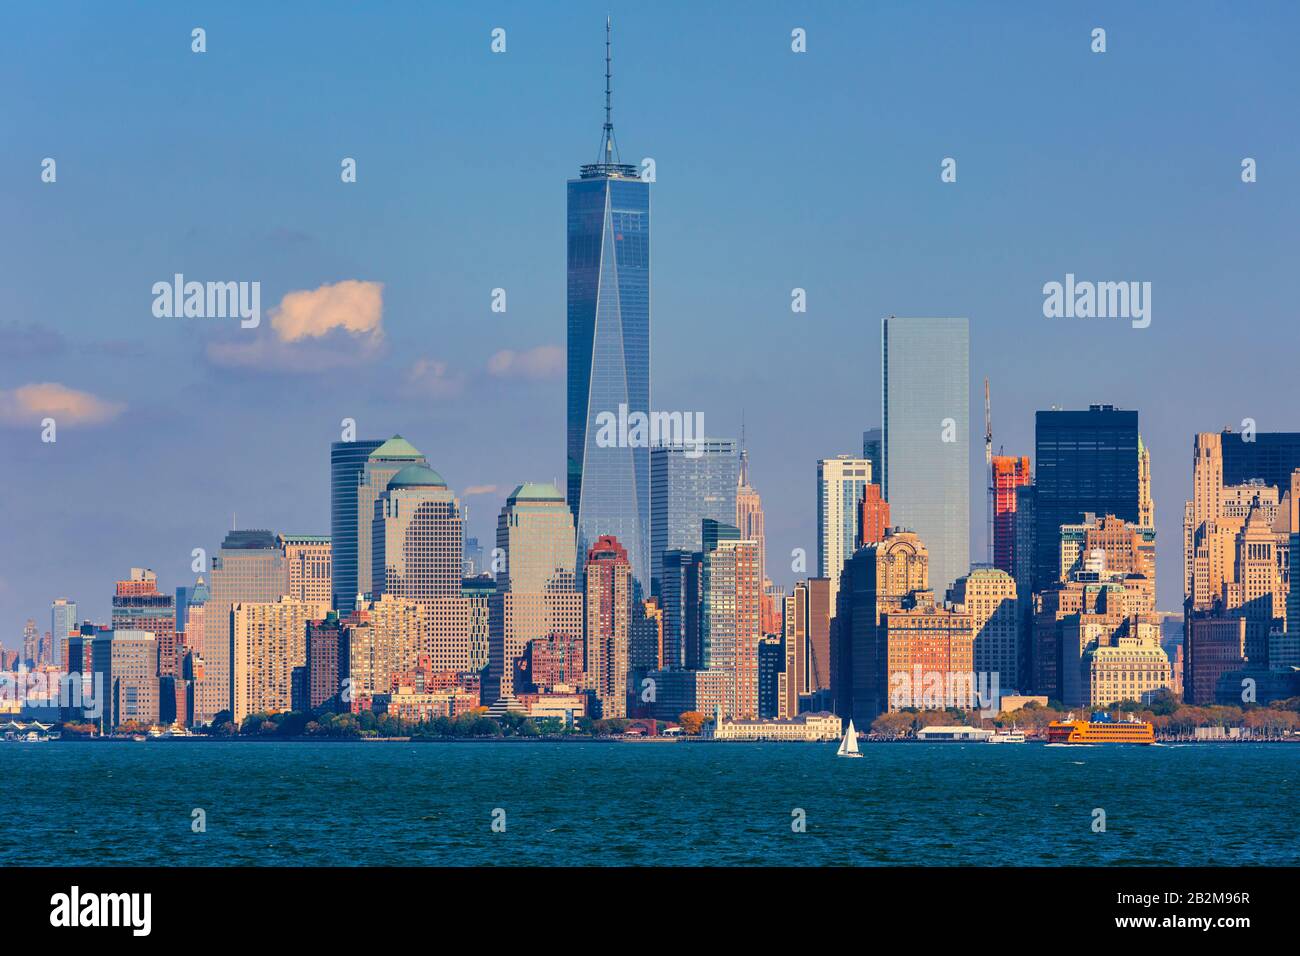 Bajo Manhattan visto desde la Bahía de Nueva York. El edificio alto es Un World Trade Center, también conocido como 1 World Trade Center, 1 WTC o Freedom Tower. Nuevo Foto de stock